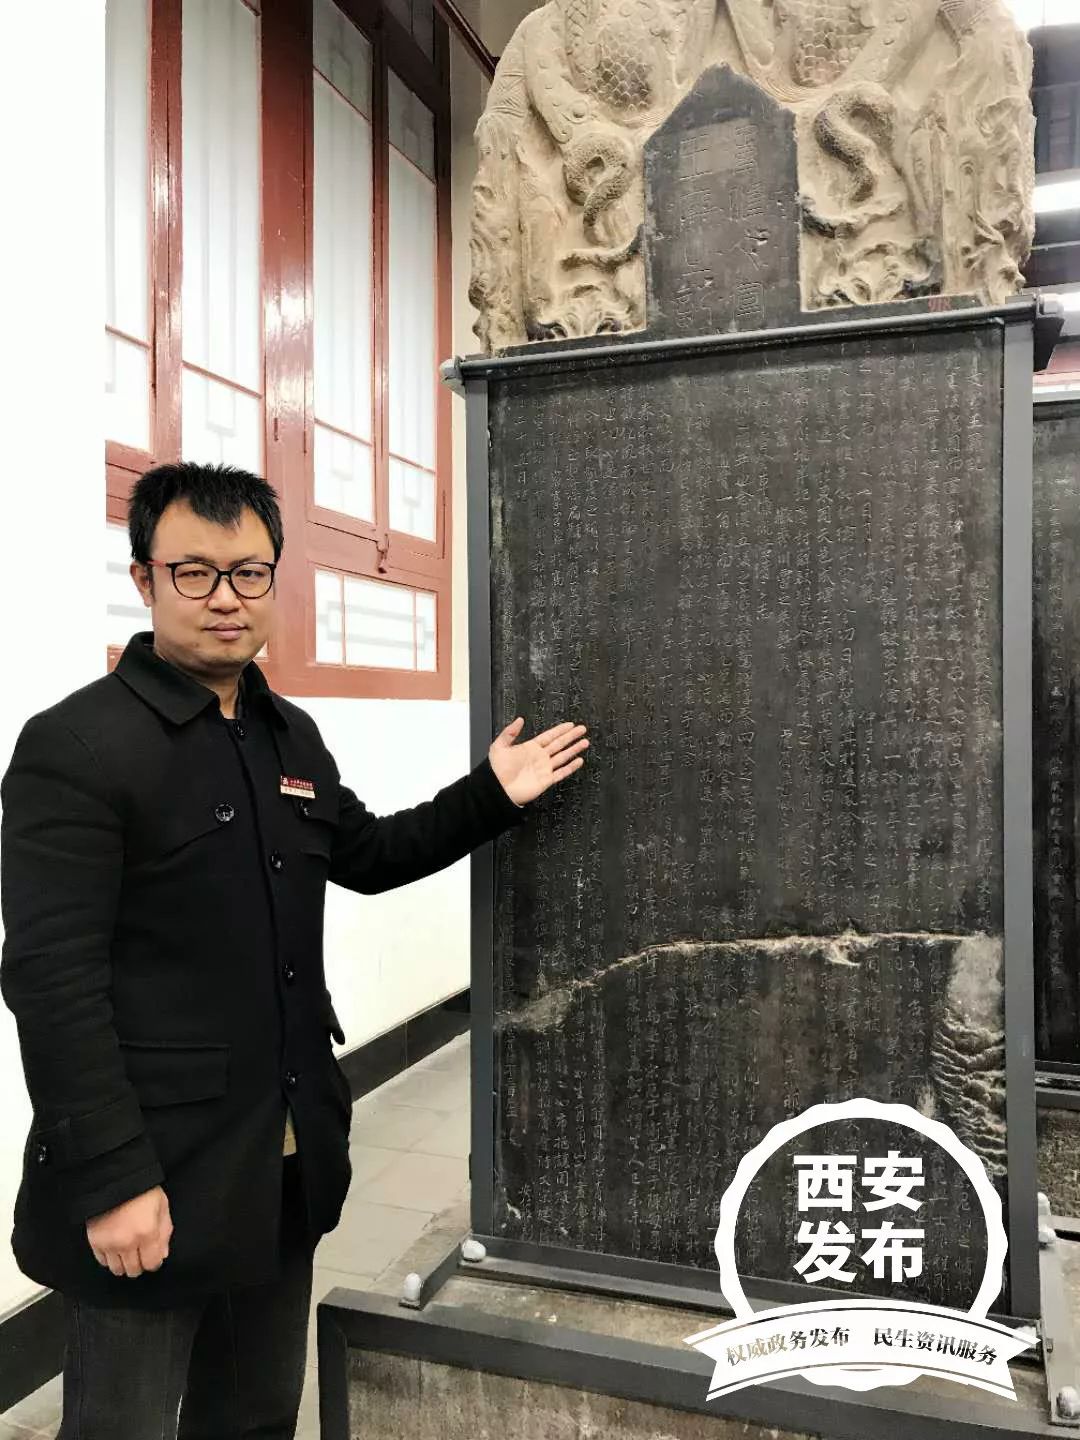 西安年·最中国|我的西安·我的年 讲解员杨烨:藏于碑林,讲述西安故事